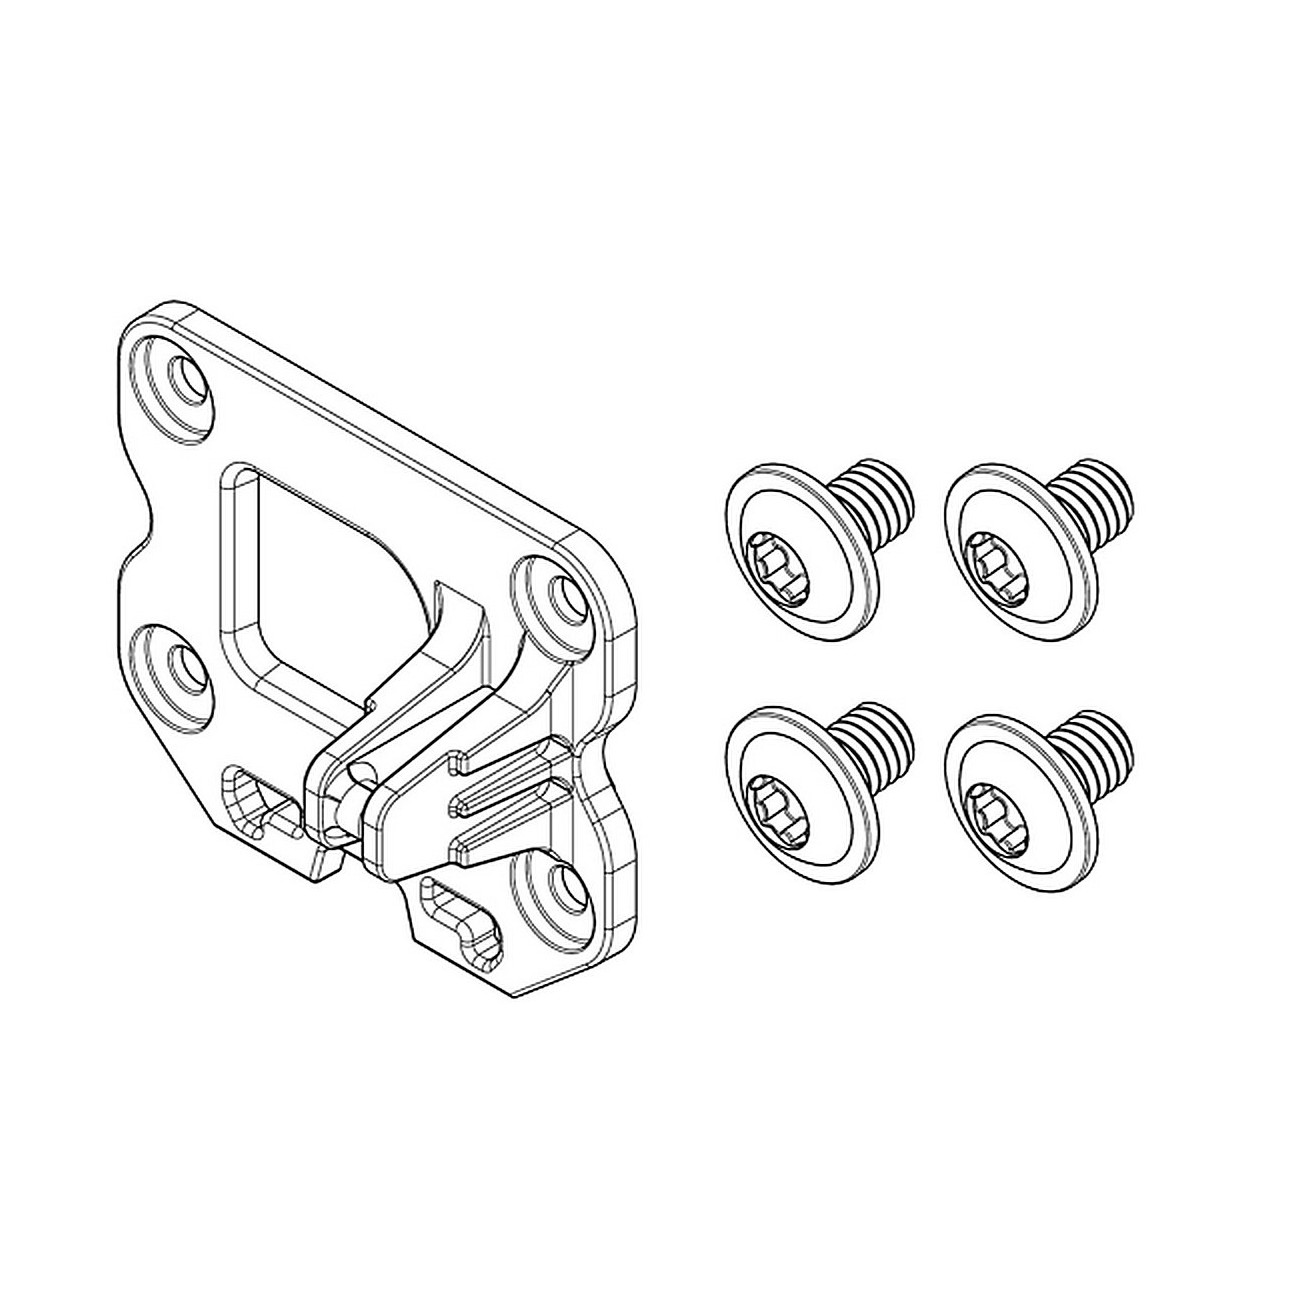 Kit piastra di fissaggio compacttube orizzontale lato serratura assiale/pivot (bbp324y) - 1 - Altro - 4054289010904